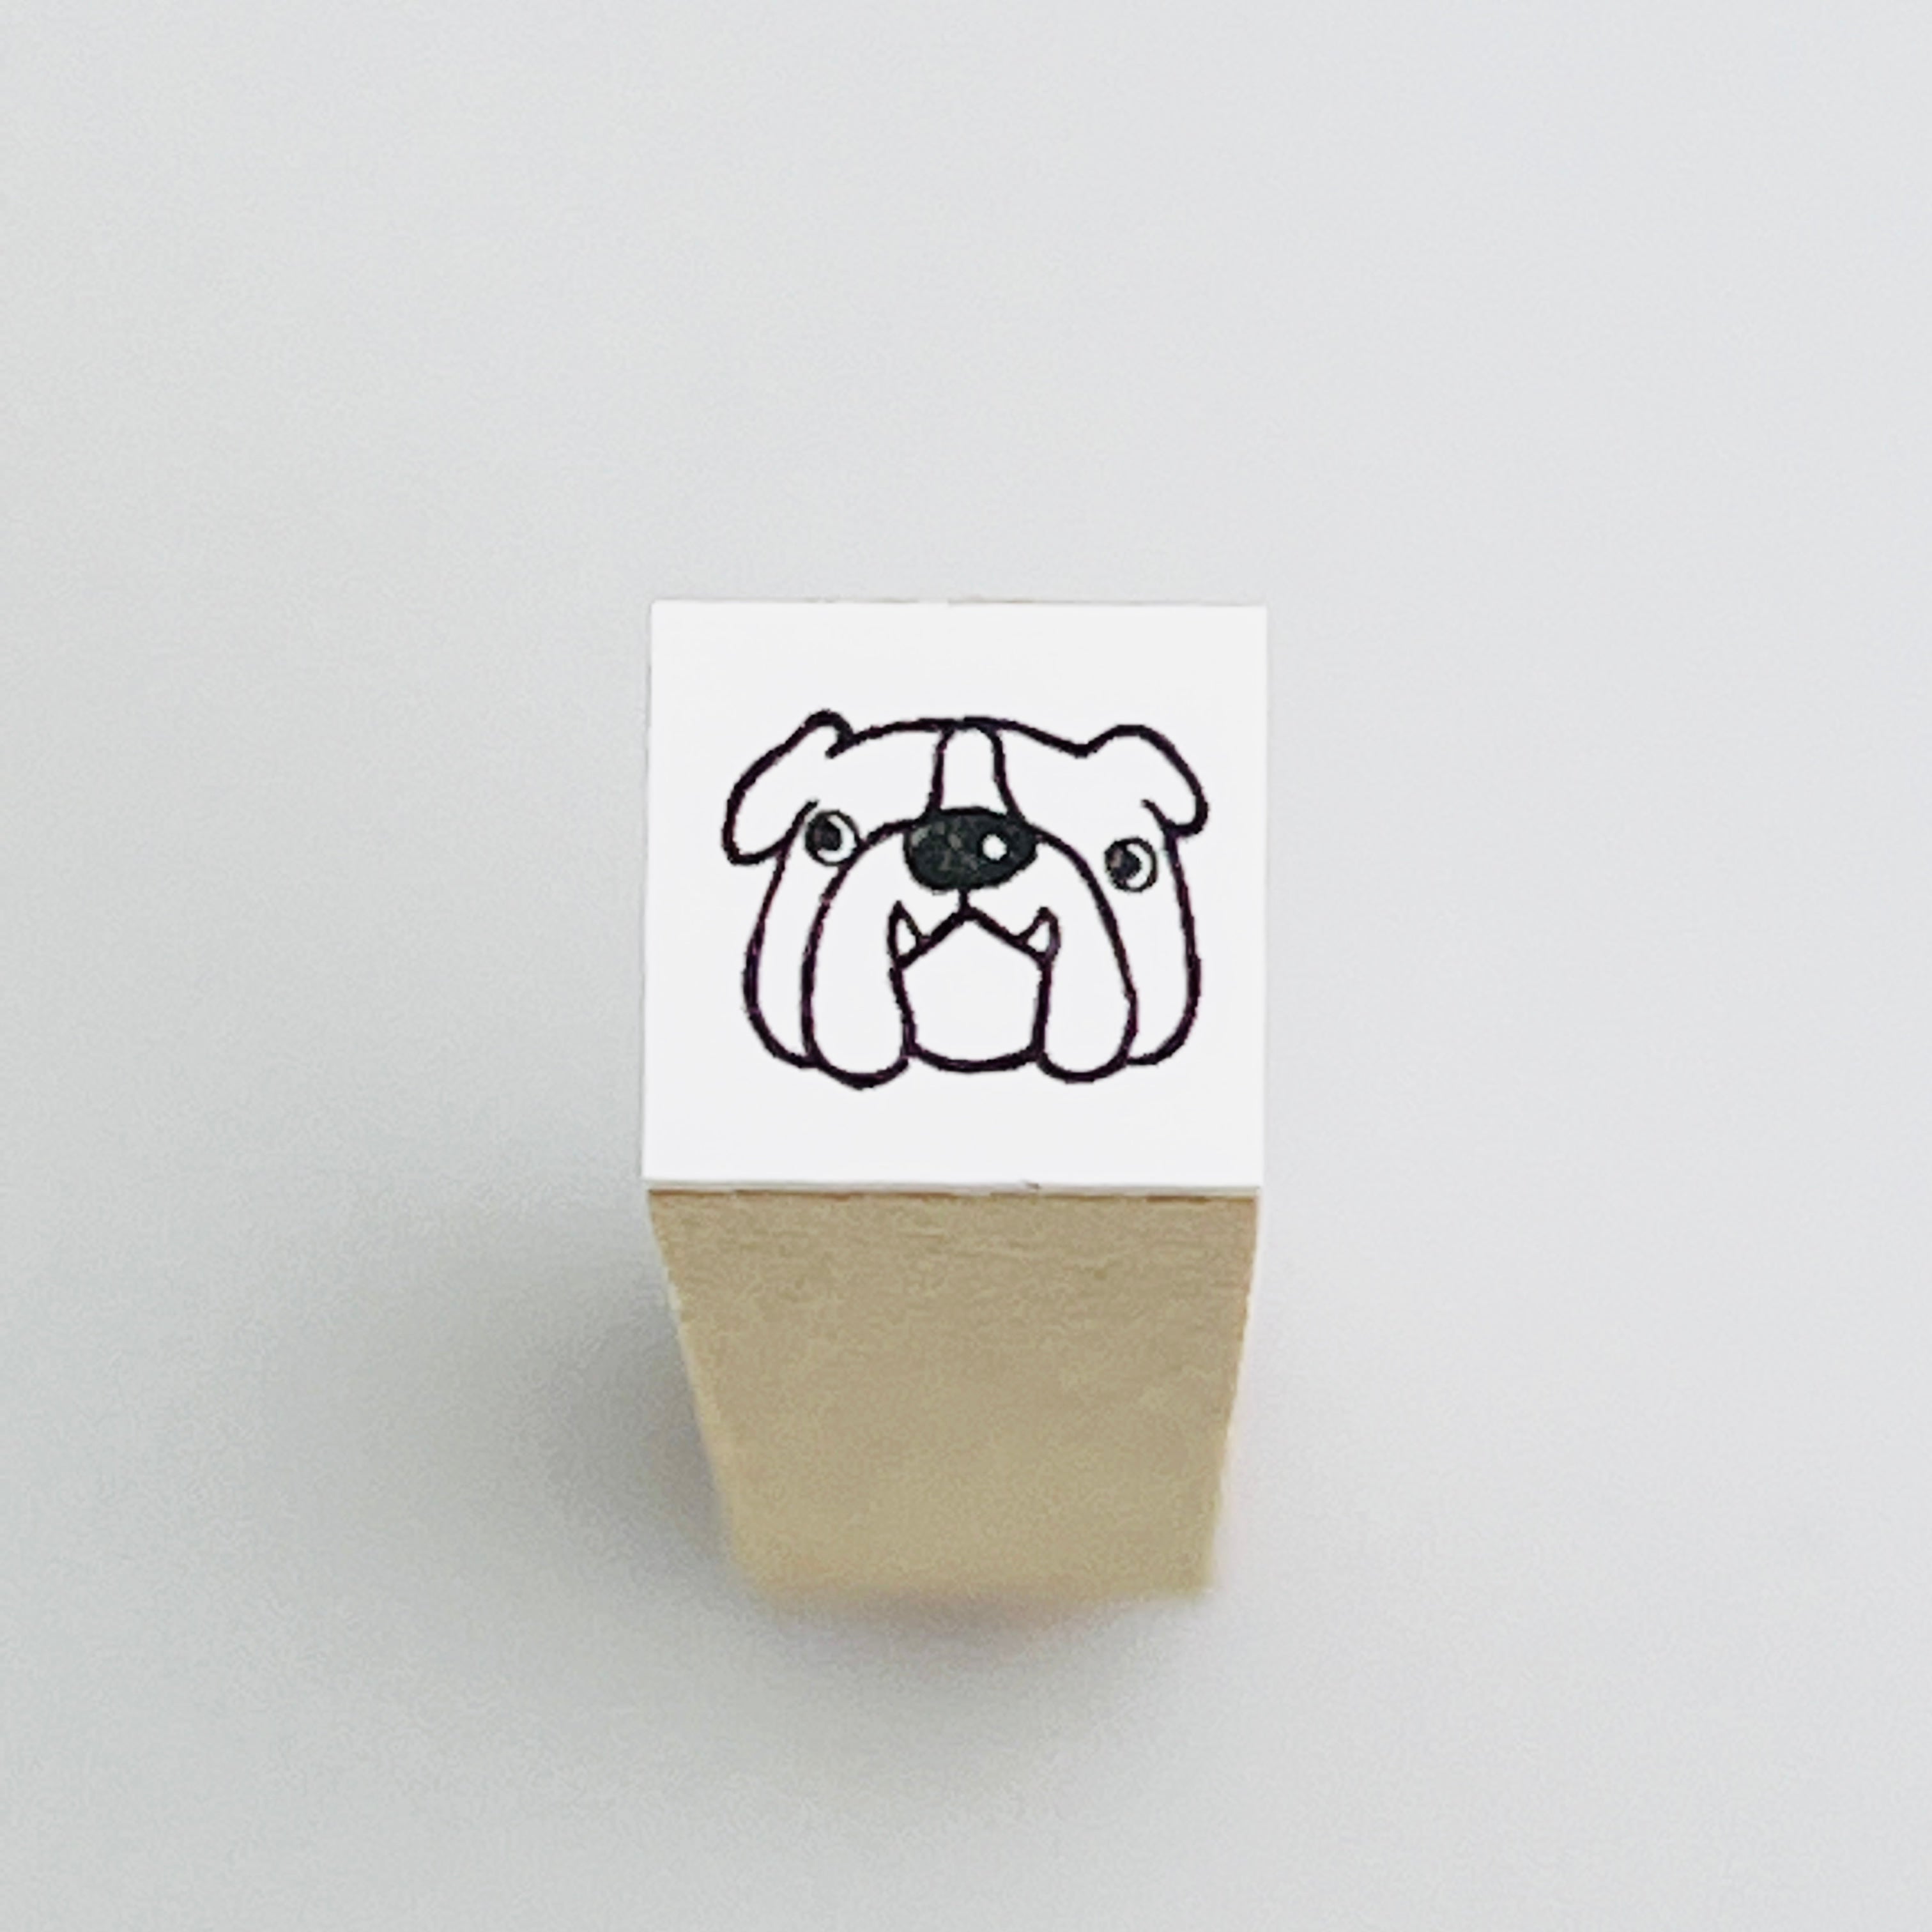 Buru-chan "Mini Mini Face Stamp"